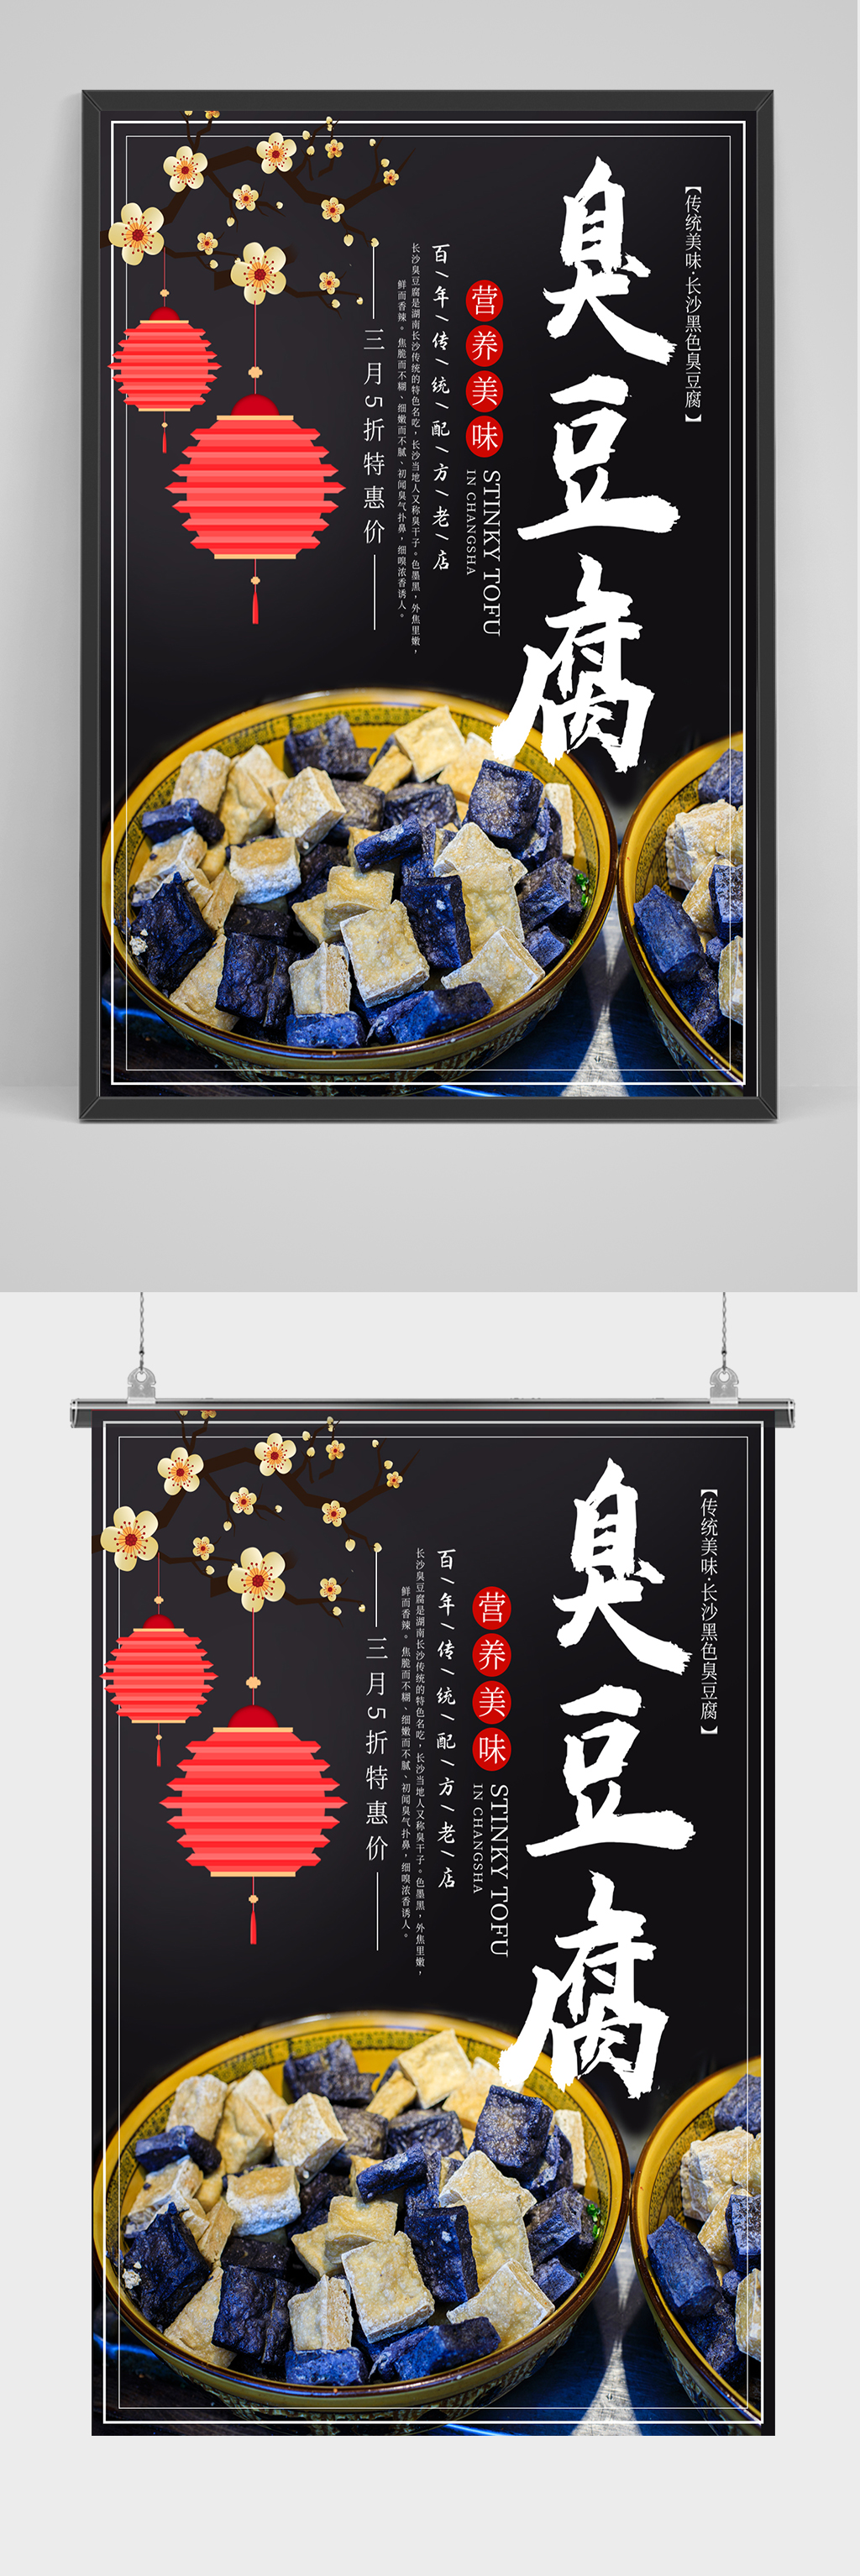 广告创意臭豆腐文案图片